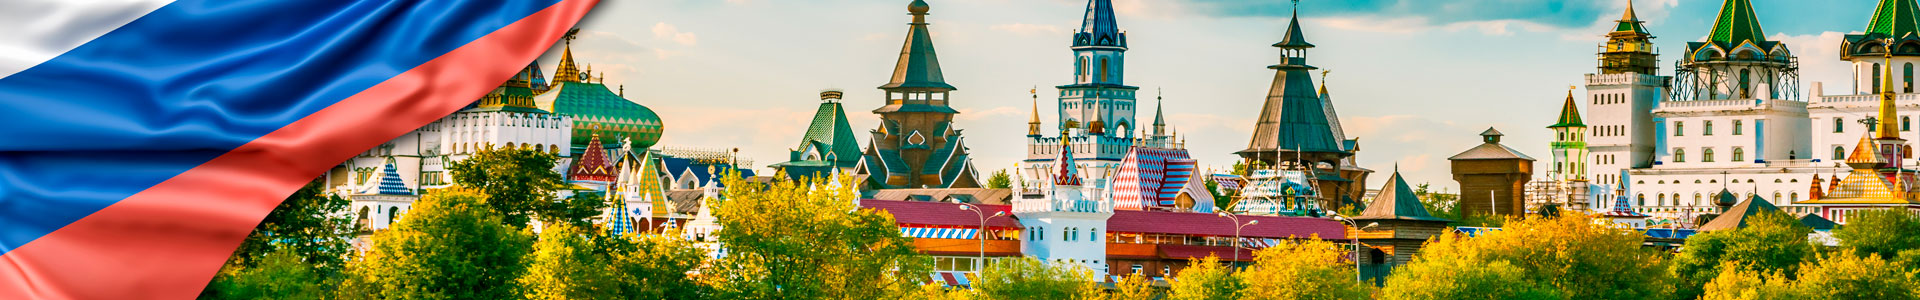 Bandera de Rusia, con hermoso paisaje con el Kremlin Izmaylovo detrás del río y exuberante vegetación, Moscú.